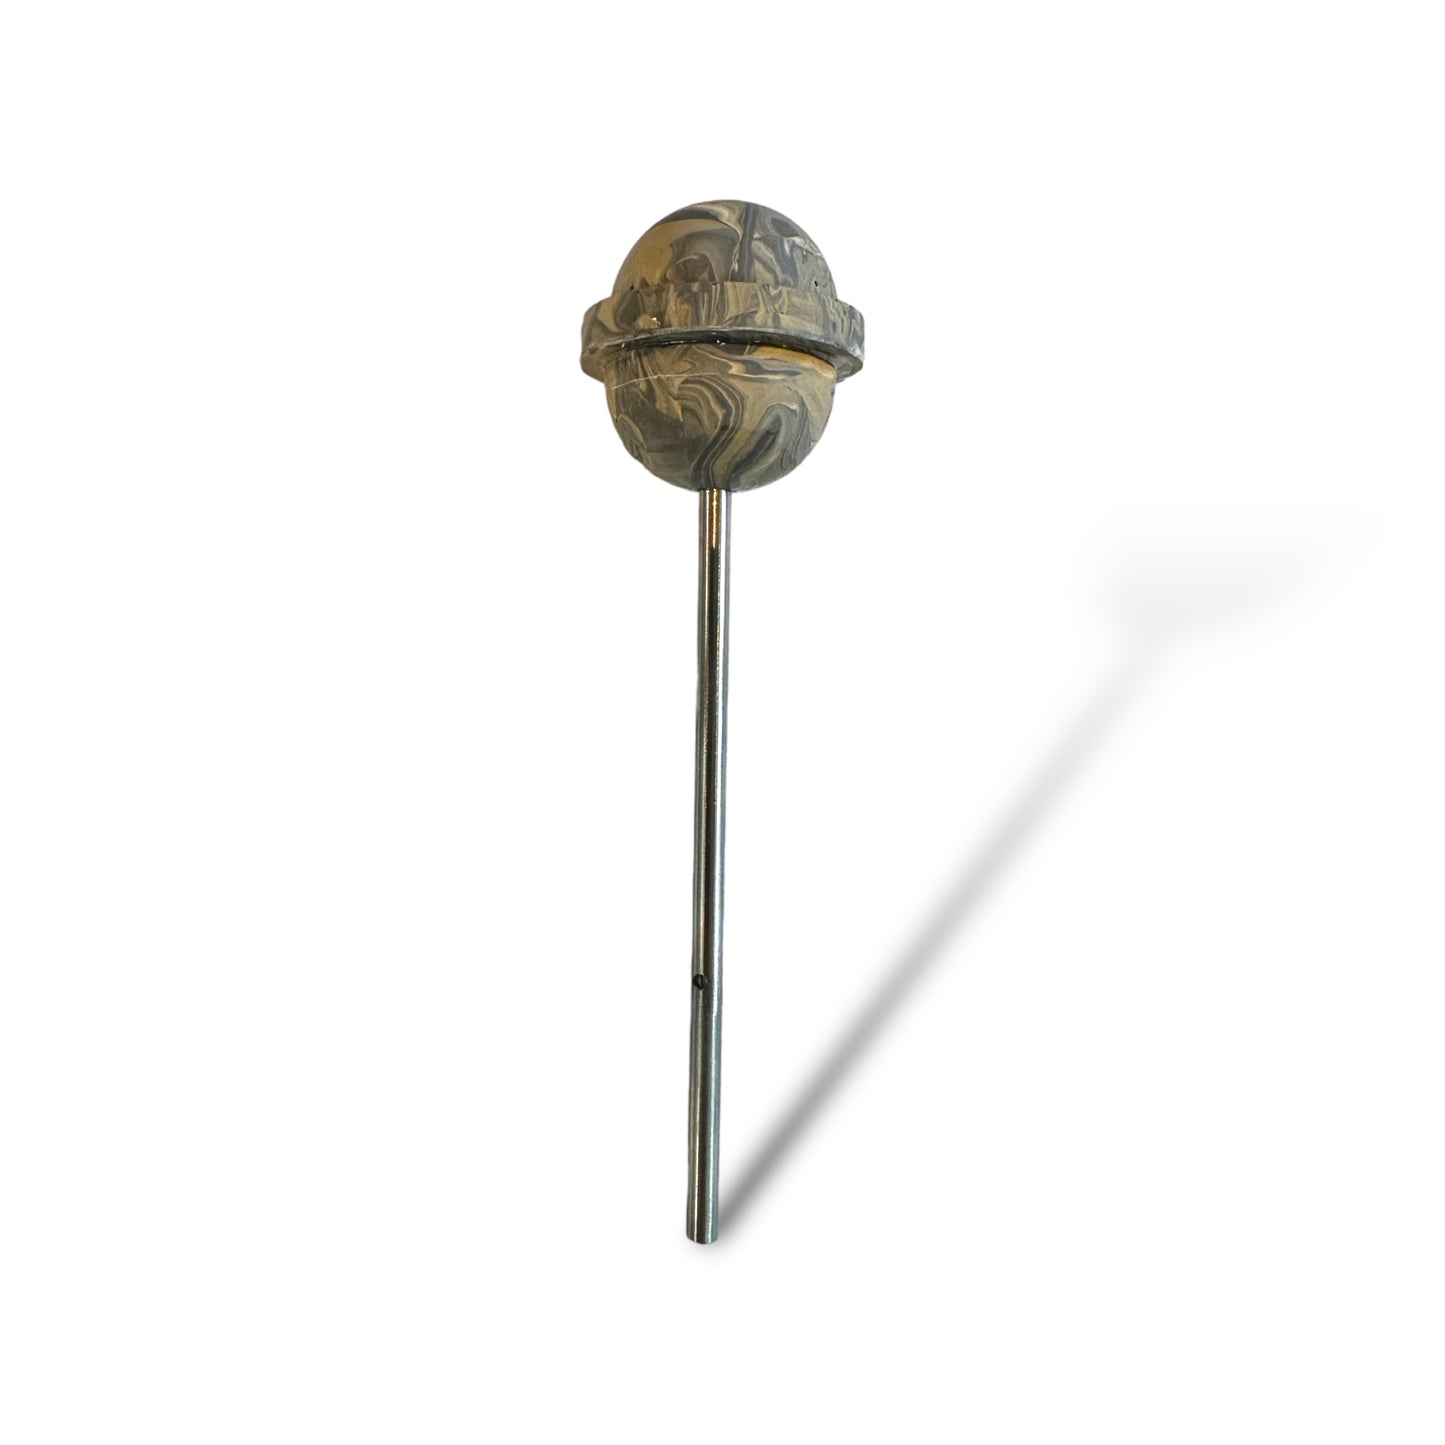 Stone lollipop